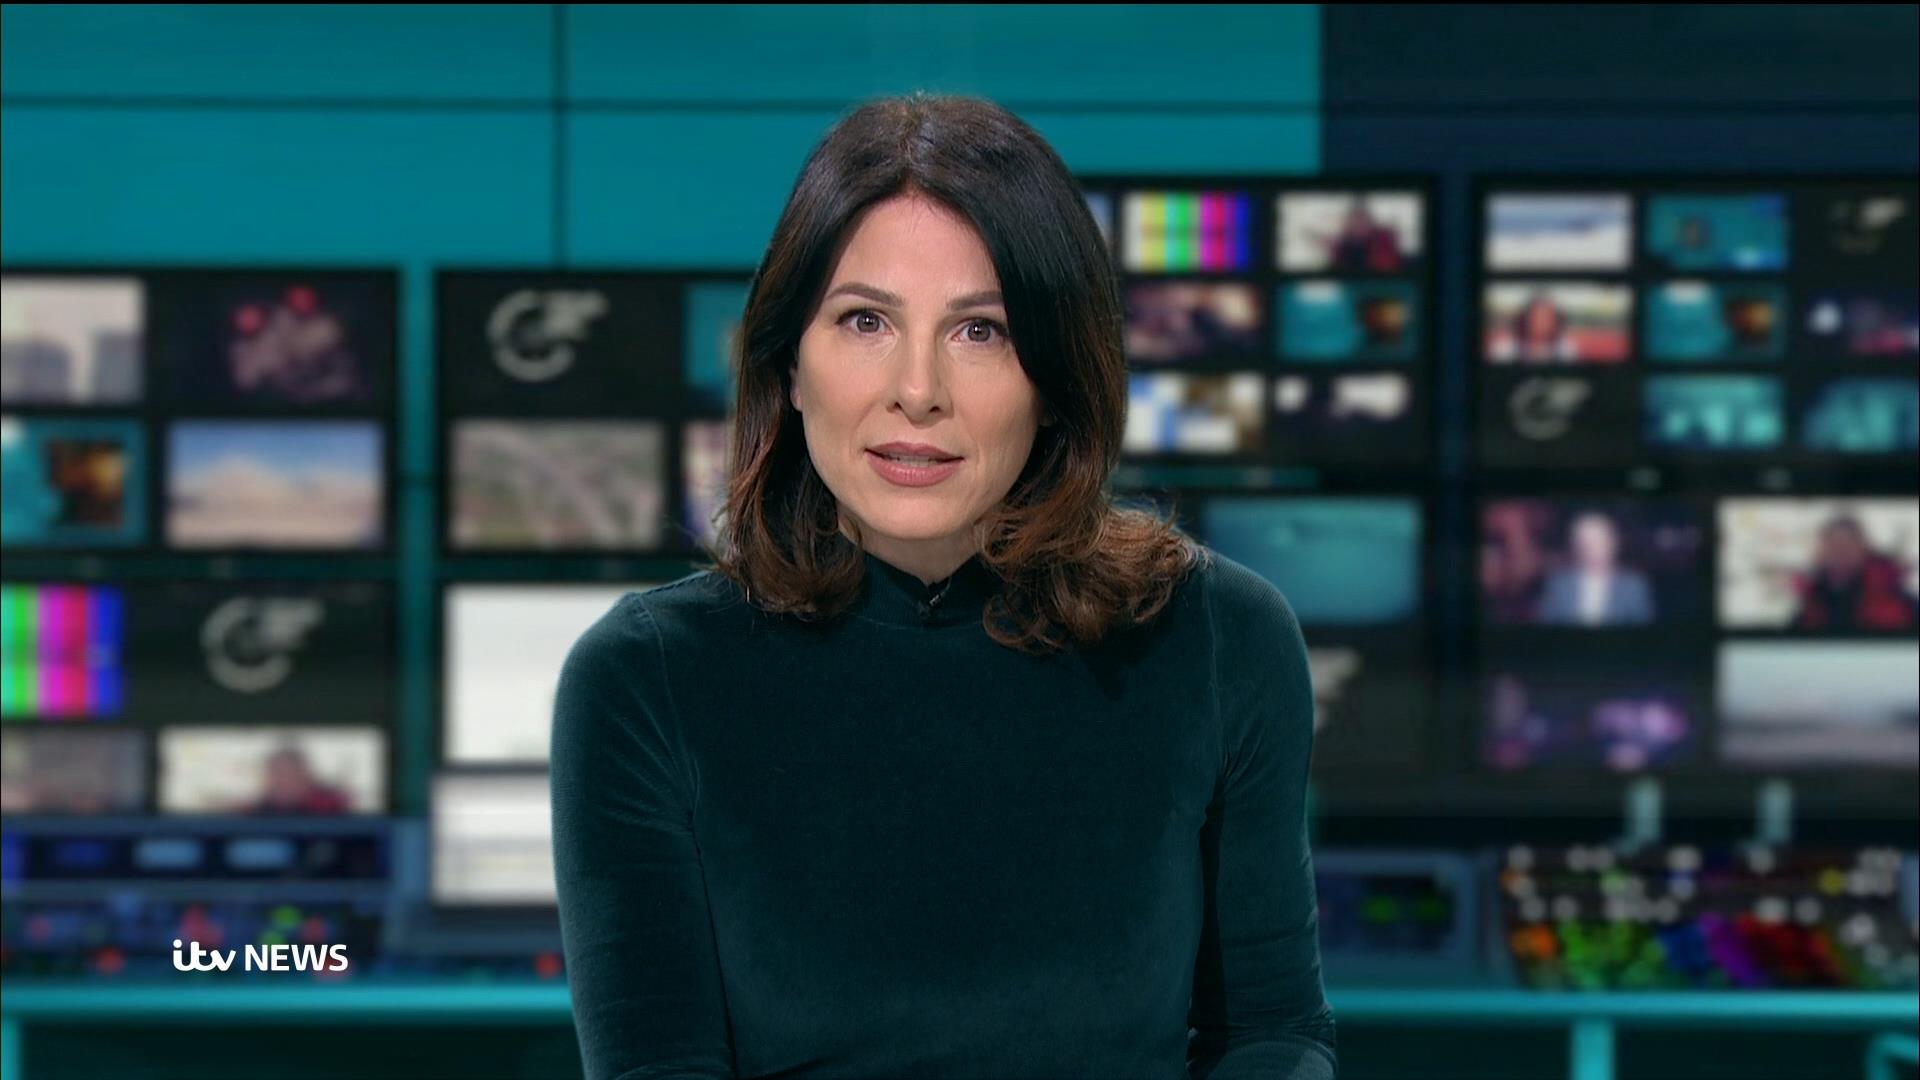 Lucrezia Millarini on ITV News